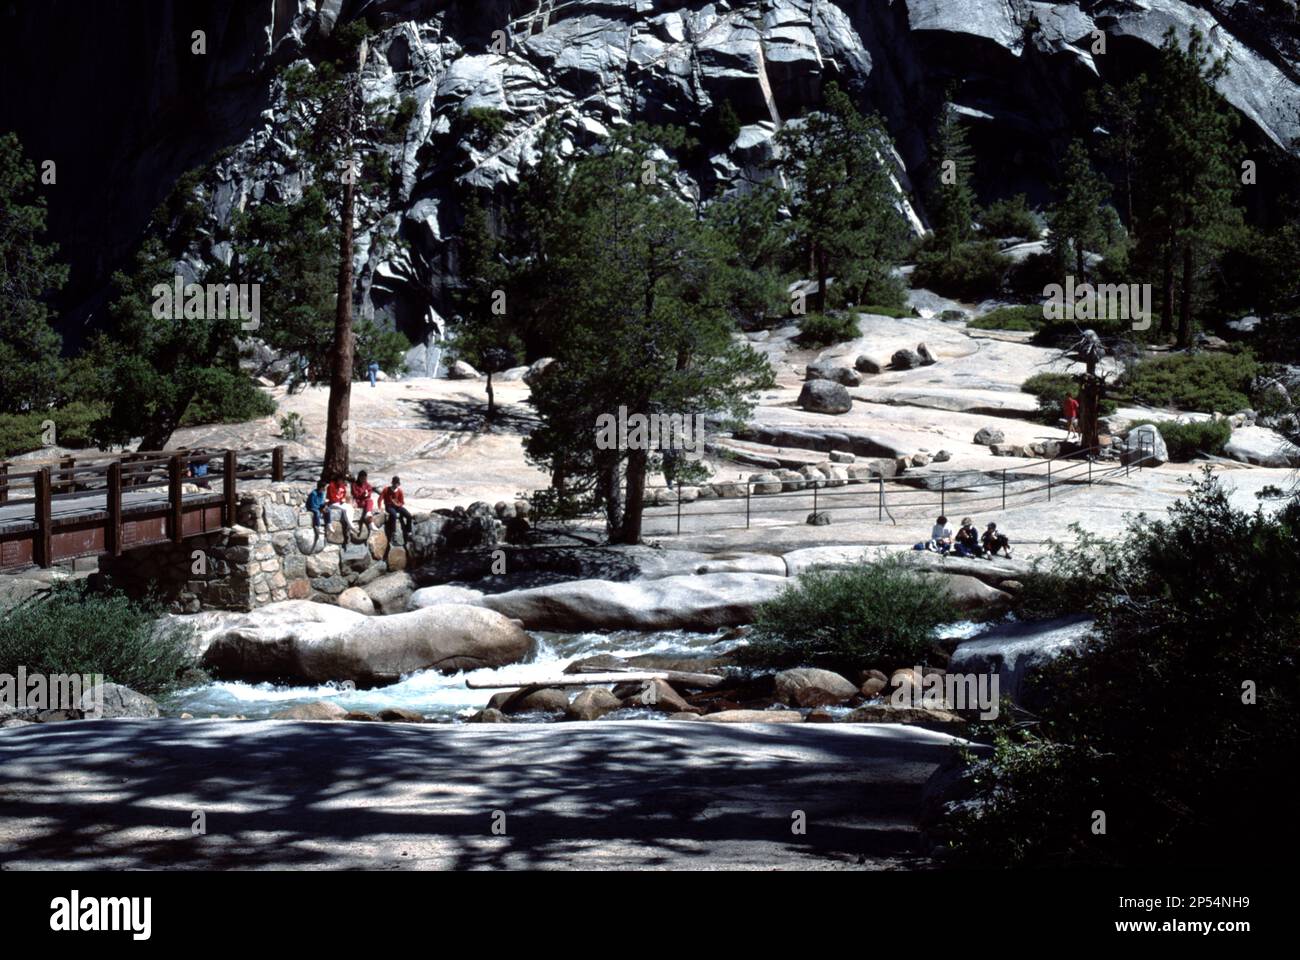 Parco Nazionale di Yosemite. CA. STATI UNITI 1984. Cascate del Nevada. La cascata del Nevada è alta 594 metri (181 m) sul fiume Merced nel parco nazionale di Yosemite, California. Si trova sotto la cupola di granito, Liberty Cap, all'estremità occidentale della Little Yosemite Valley. Escursione faticosa. Le giostre sono disponibili, tempo permettendo, presso le stalle di Wawona. Foto Stock